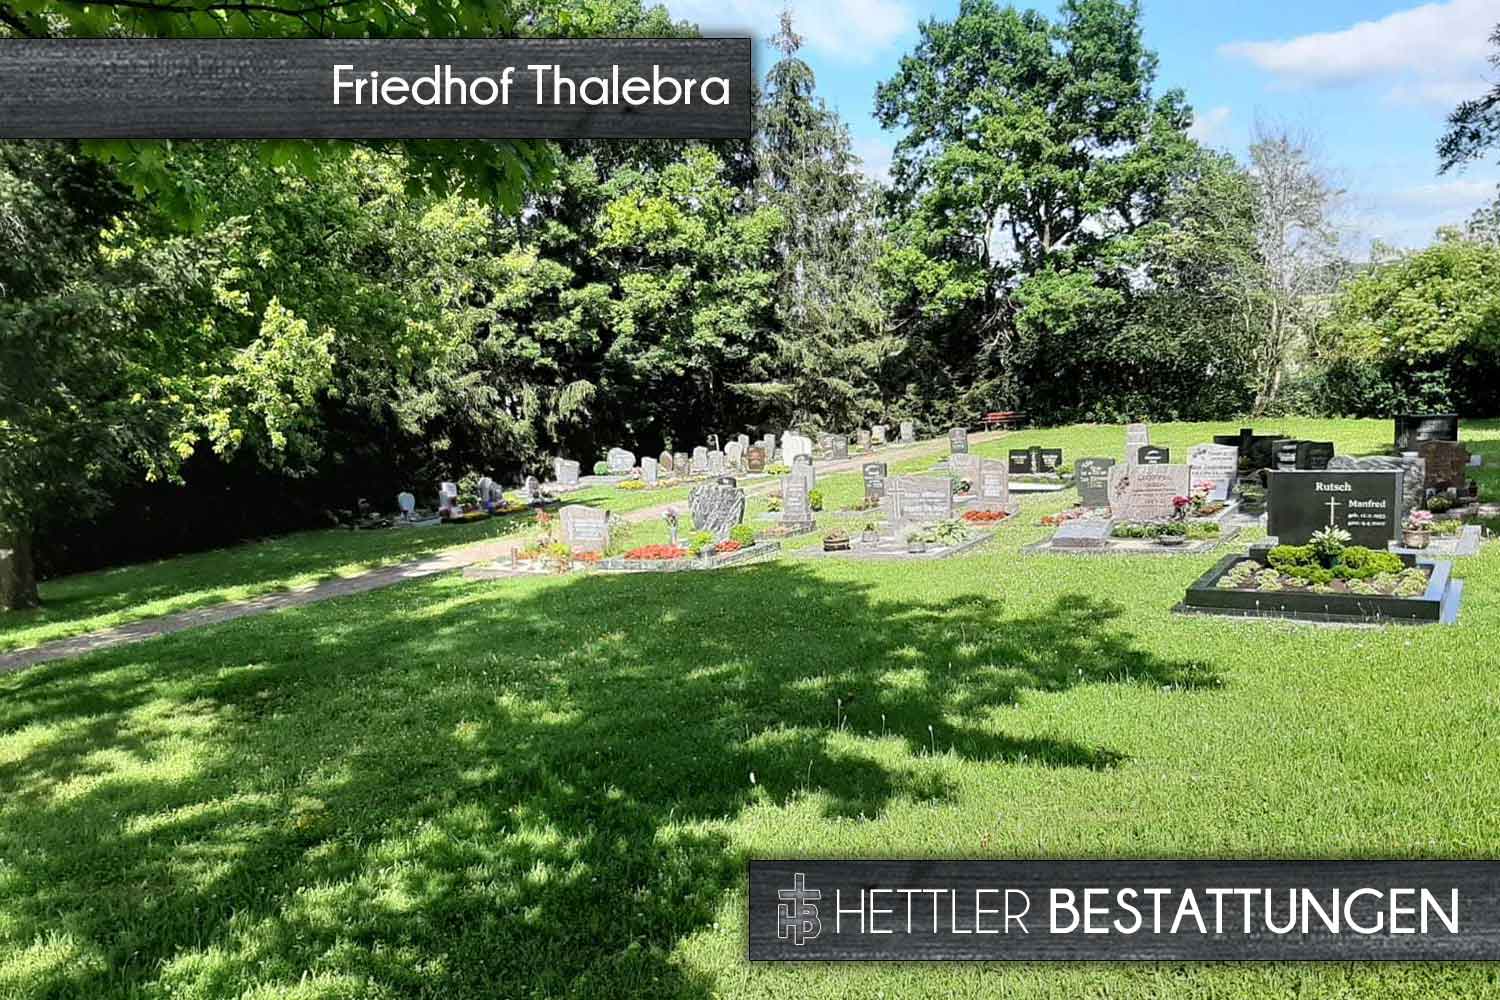 Friedhof in Thalebra. Ihr Ort des Abschieds mit Hettler Bestattungen.